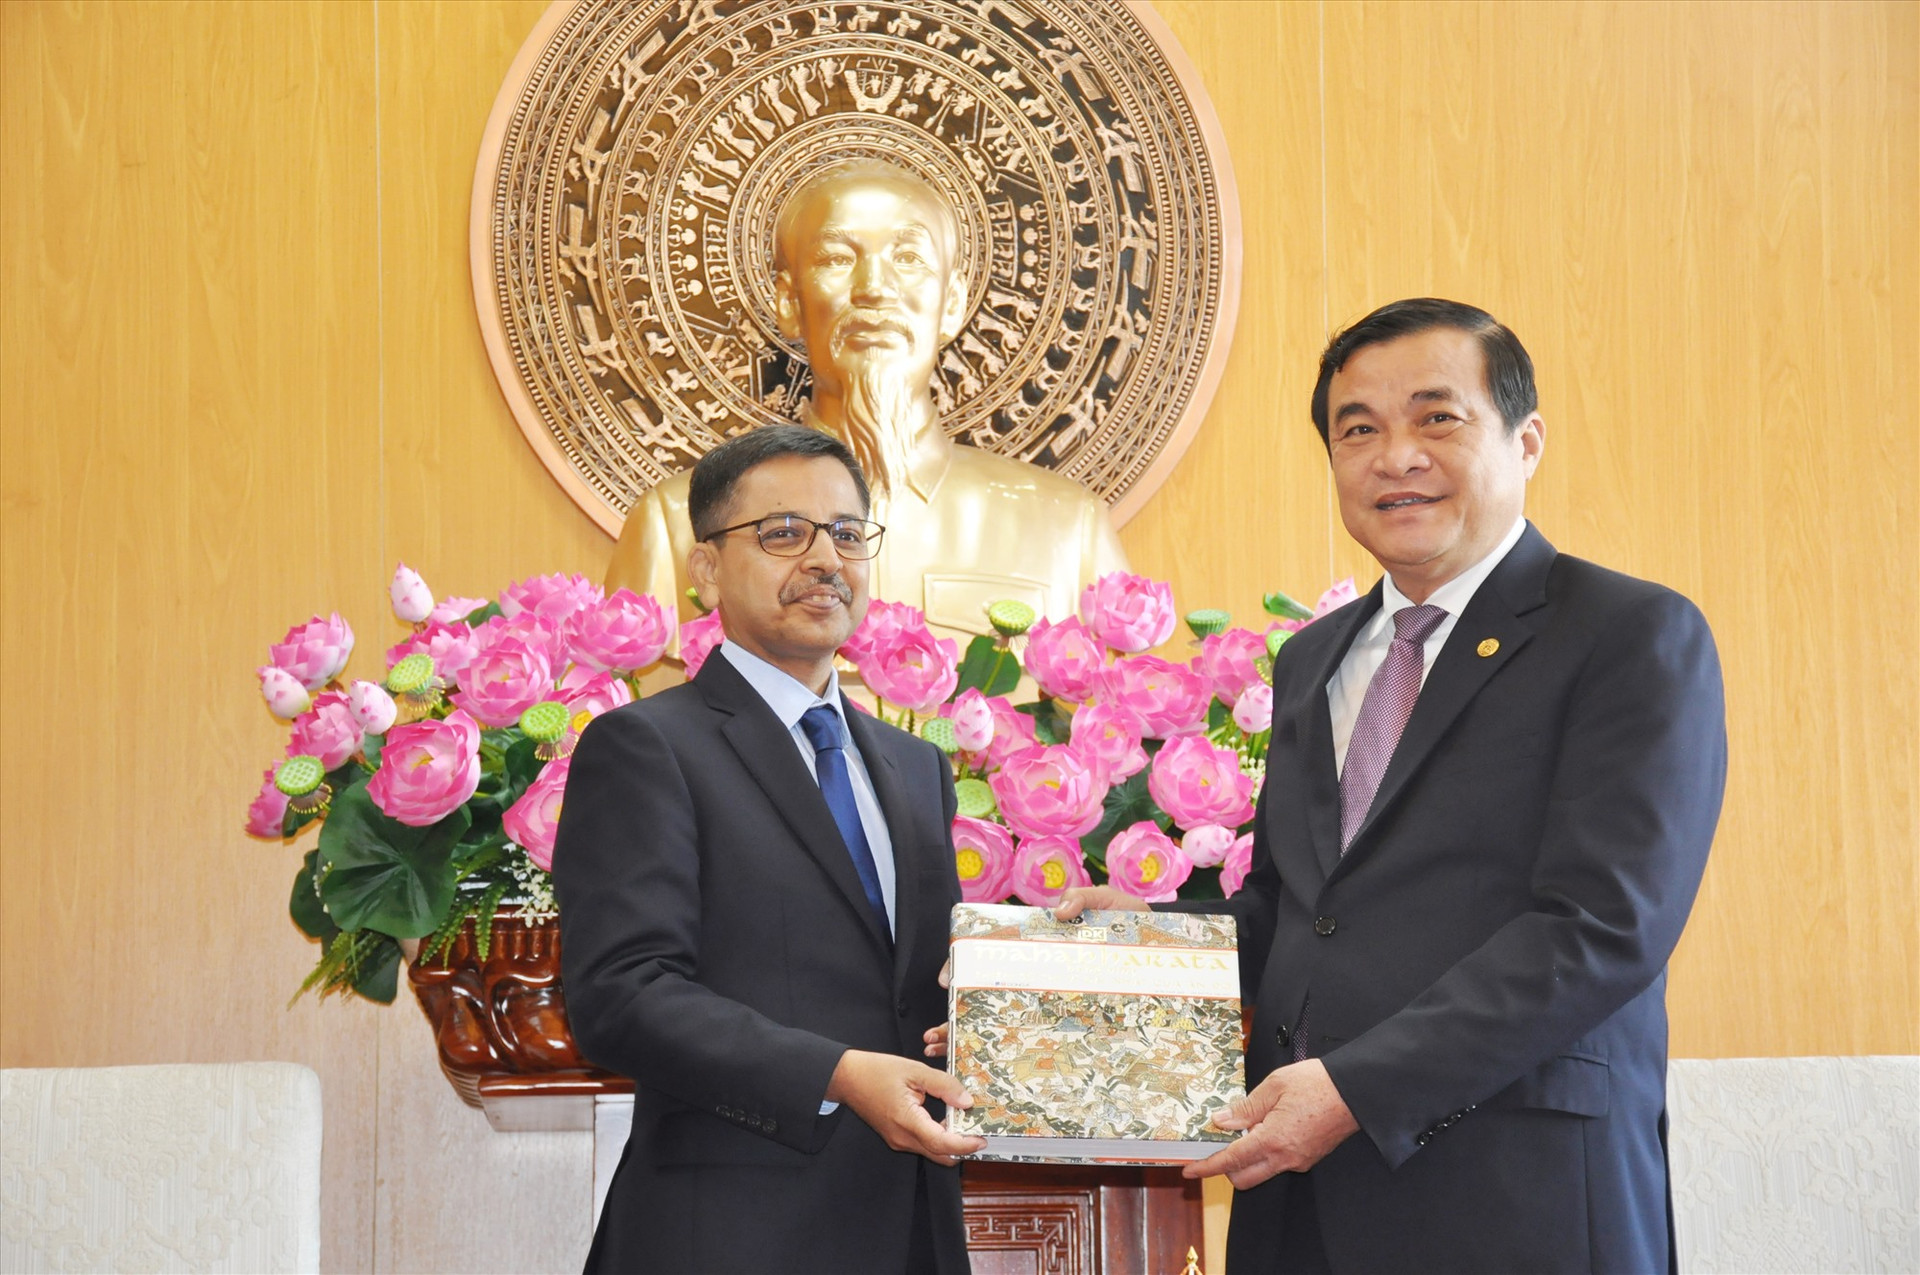 Ông Pranay Verma - Đại sứ đặc mệnh toàn quyền Cộng hòa Ấn Độ tại Việt Nam tặng quà lưu niệm - cuốn sử thi Mahabharata nổi tiếng của Ấn Độ cho lãnh đạo tỉnh. Ảnh: N.Đ